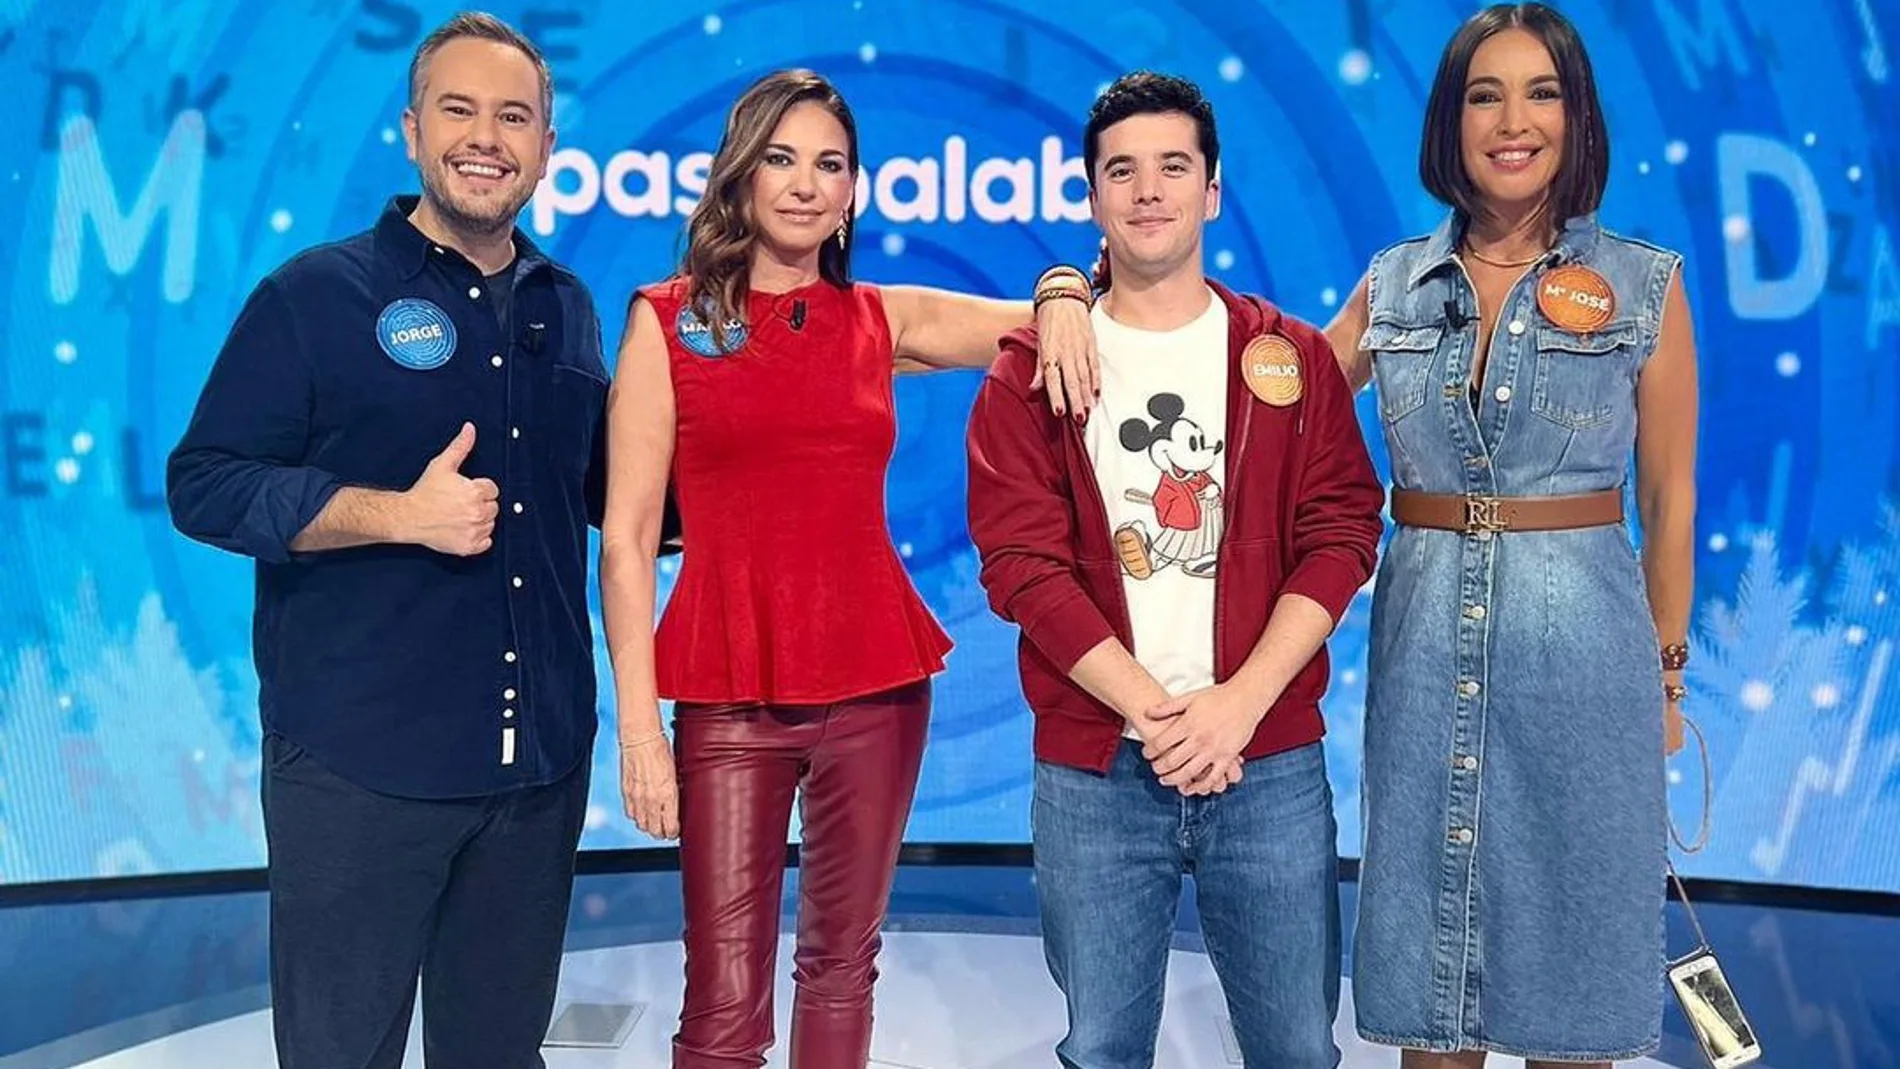 Mariló Montero, Jorge Blass, Emilio Doménech y María José Besora estrenan diciembre en Pasapalabra